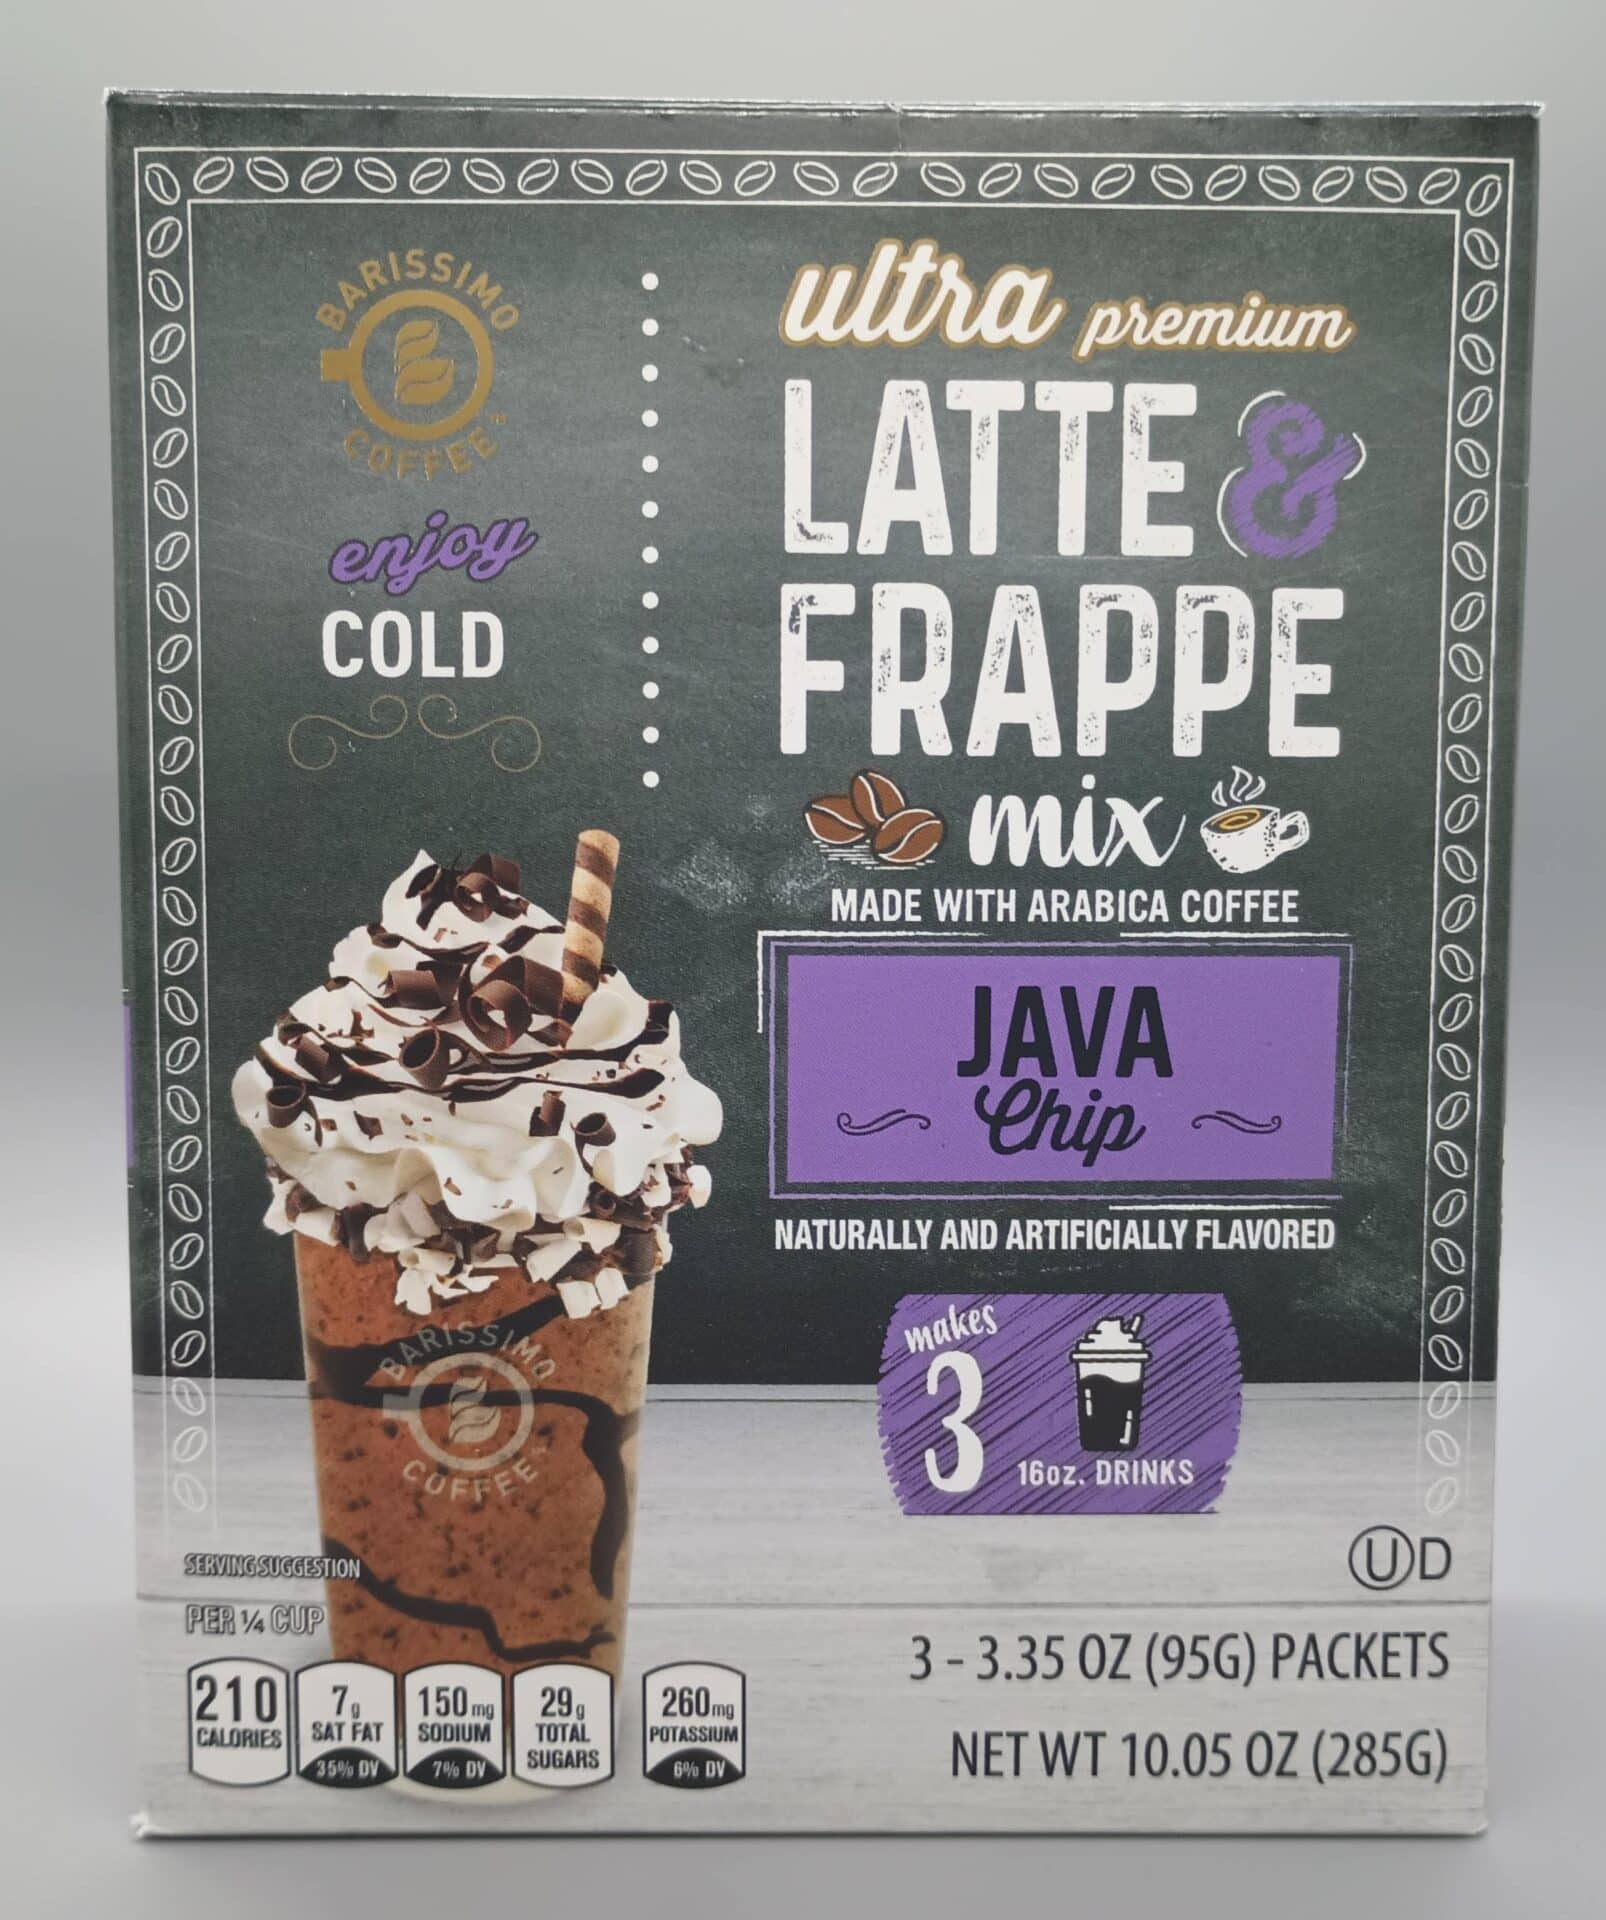 Barissimo Ultra Premium Latte Frappe